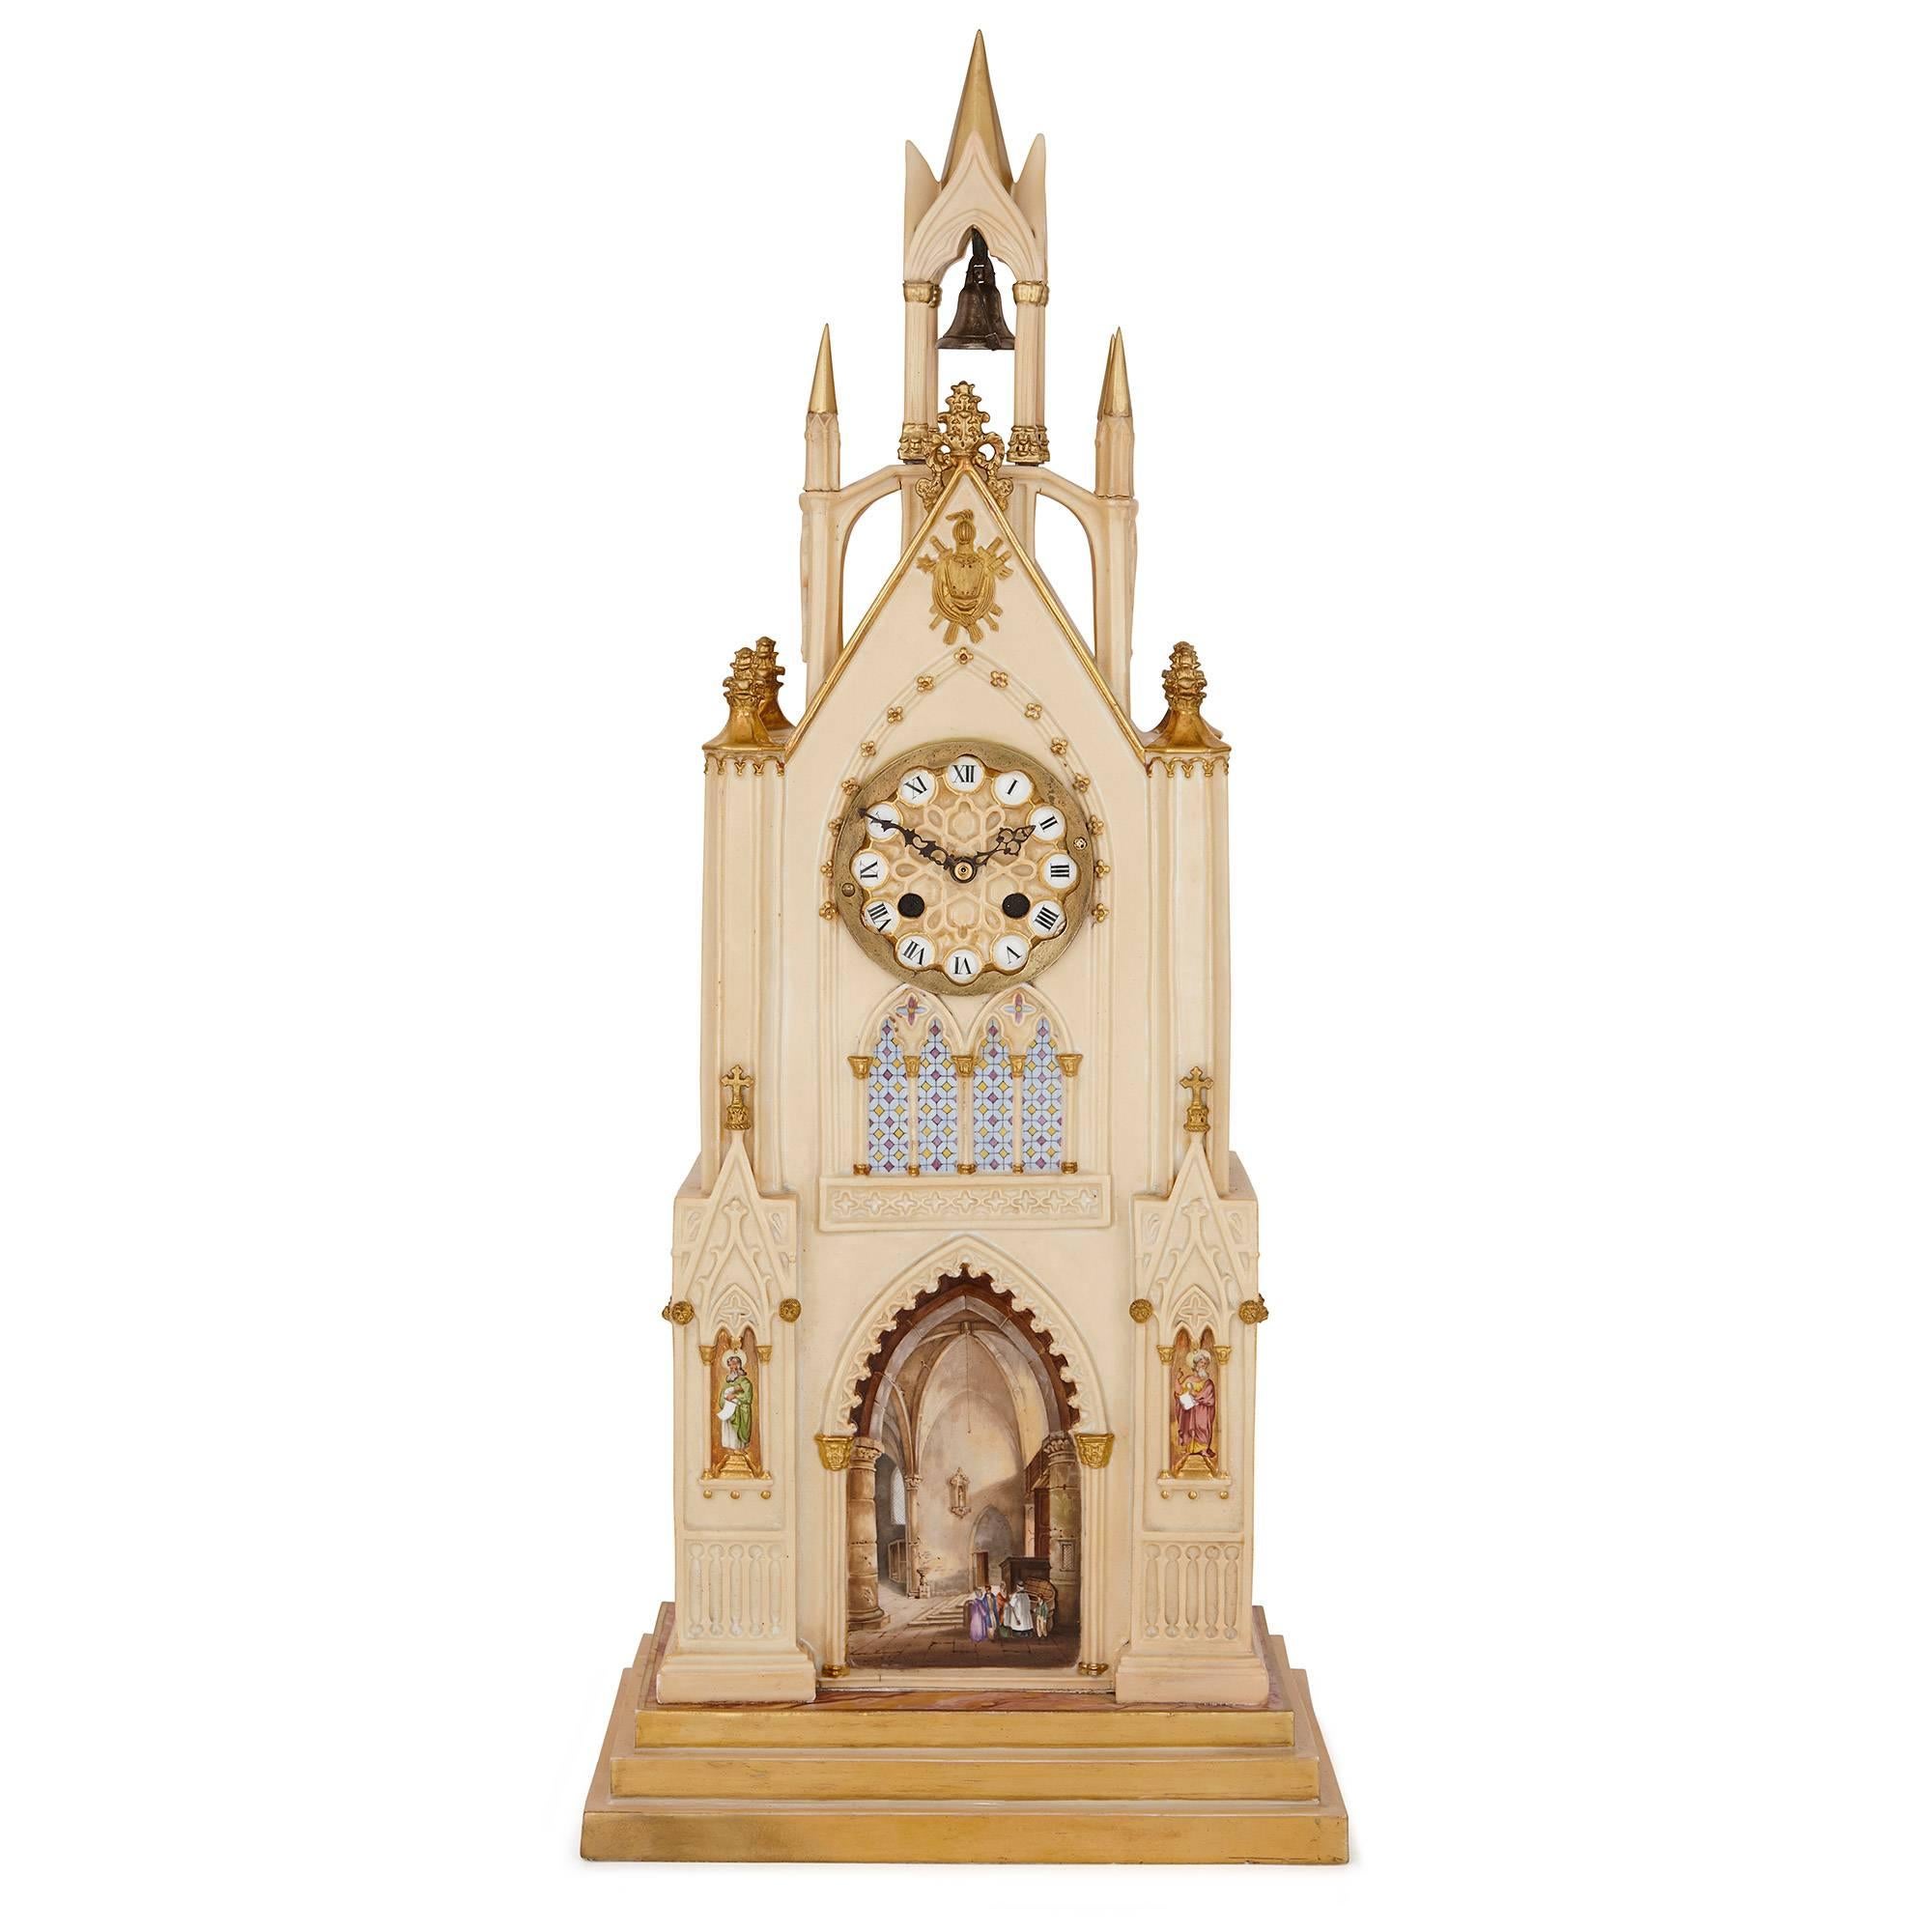 Cette magnifique horloge en porcelaine de style néo-gothique a été fabriquée par la prestigieuse maison française Dagoty et Honore, fondée par les porcelainiers estimés Pierre-Louis Dagoty et Edouard Honore. Au début du XIXe siècle, la fabrique de